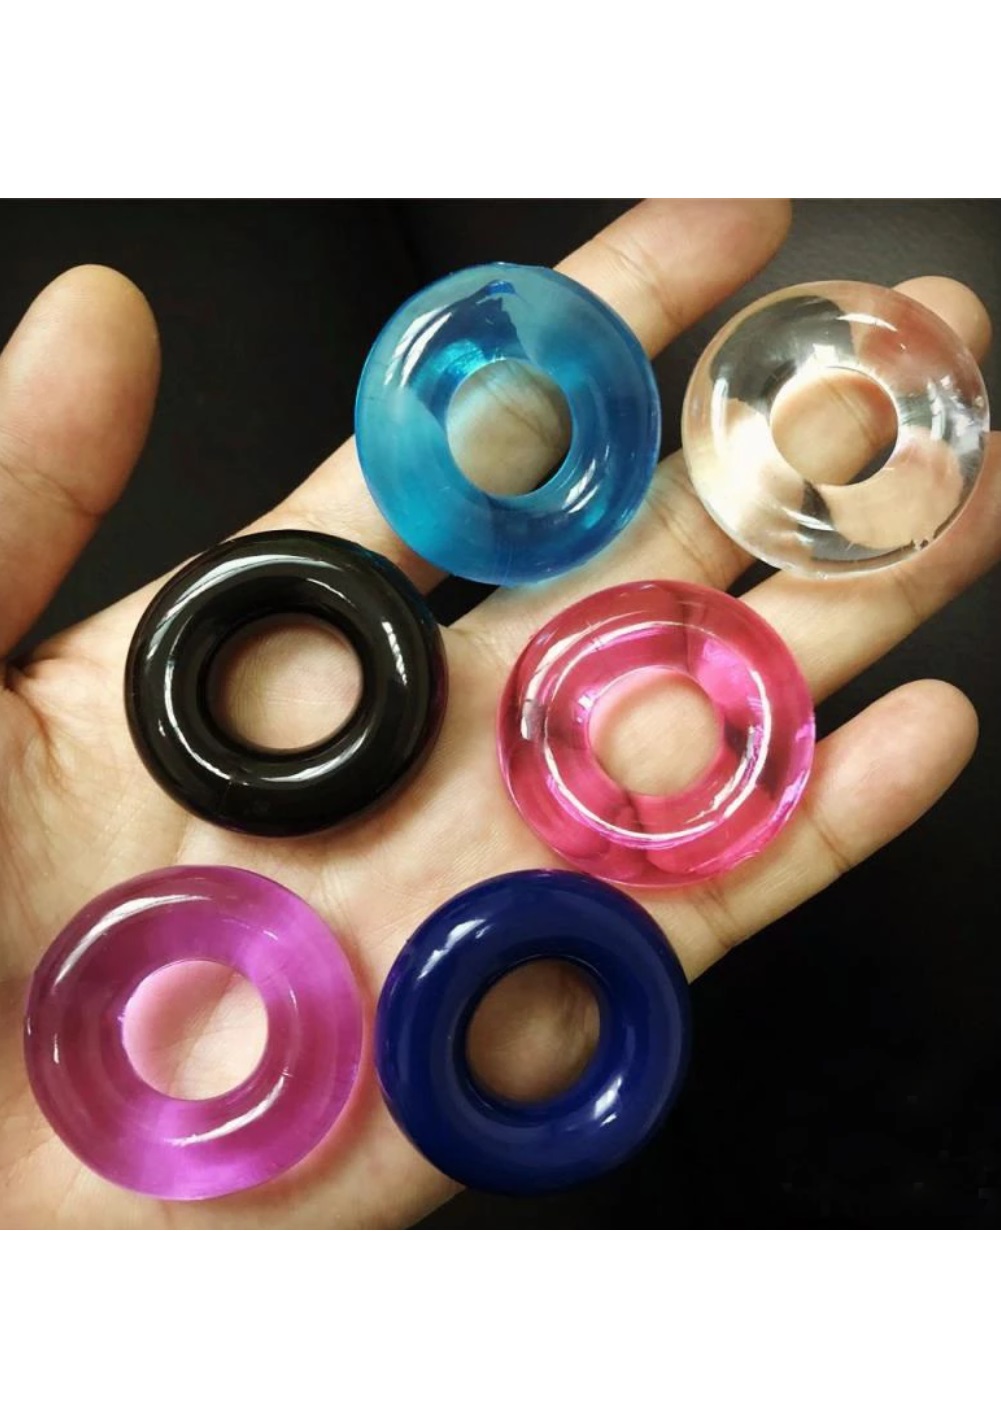 Rubber rings for men dick